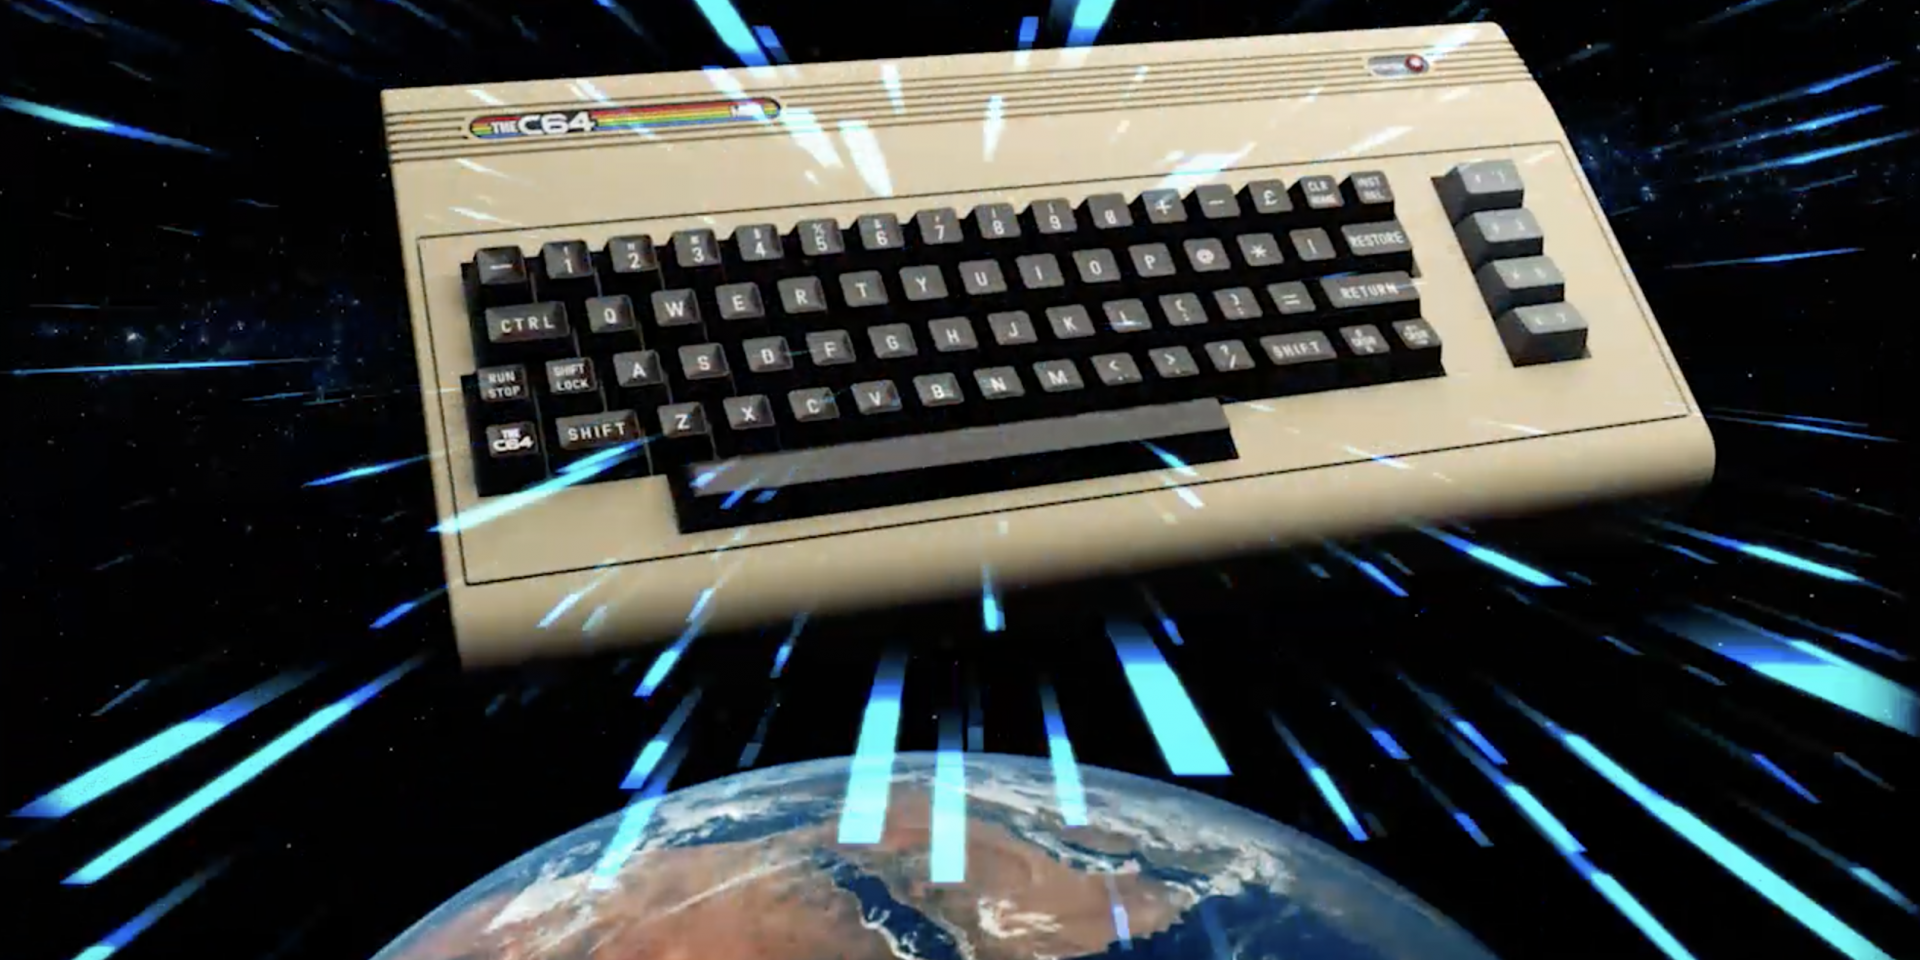 Torna il Commodore 64 in versione ridotta